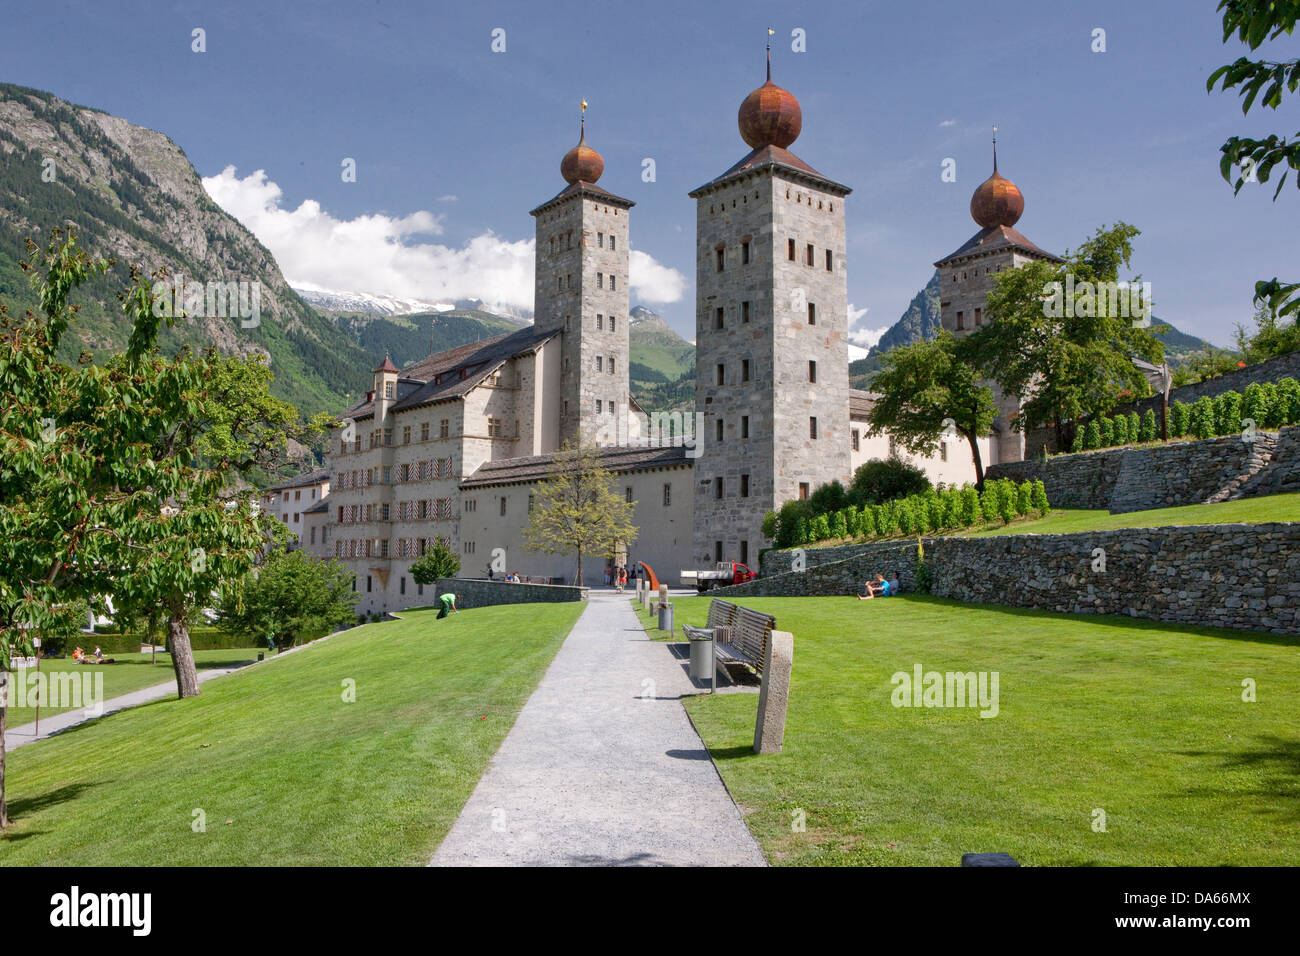 Brig, cantón Valais, iglesia, religión, Castillo, pueblo, ciudad, Suiza, Europa, palacio, Stockalper Foto de stock